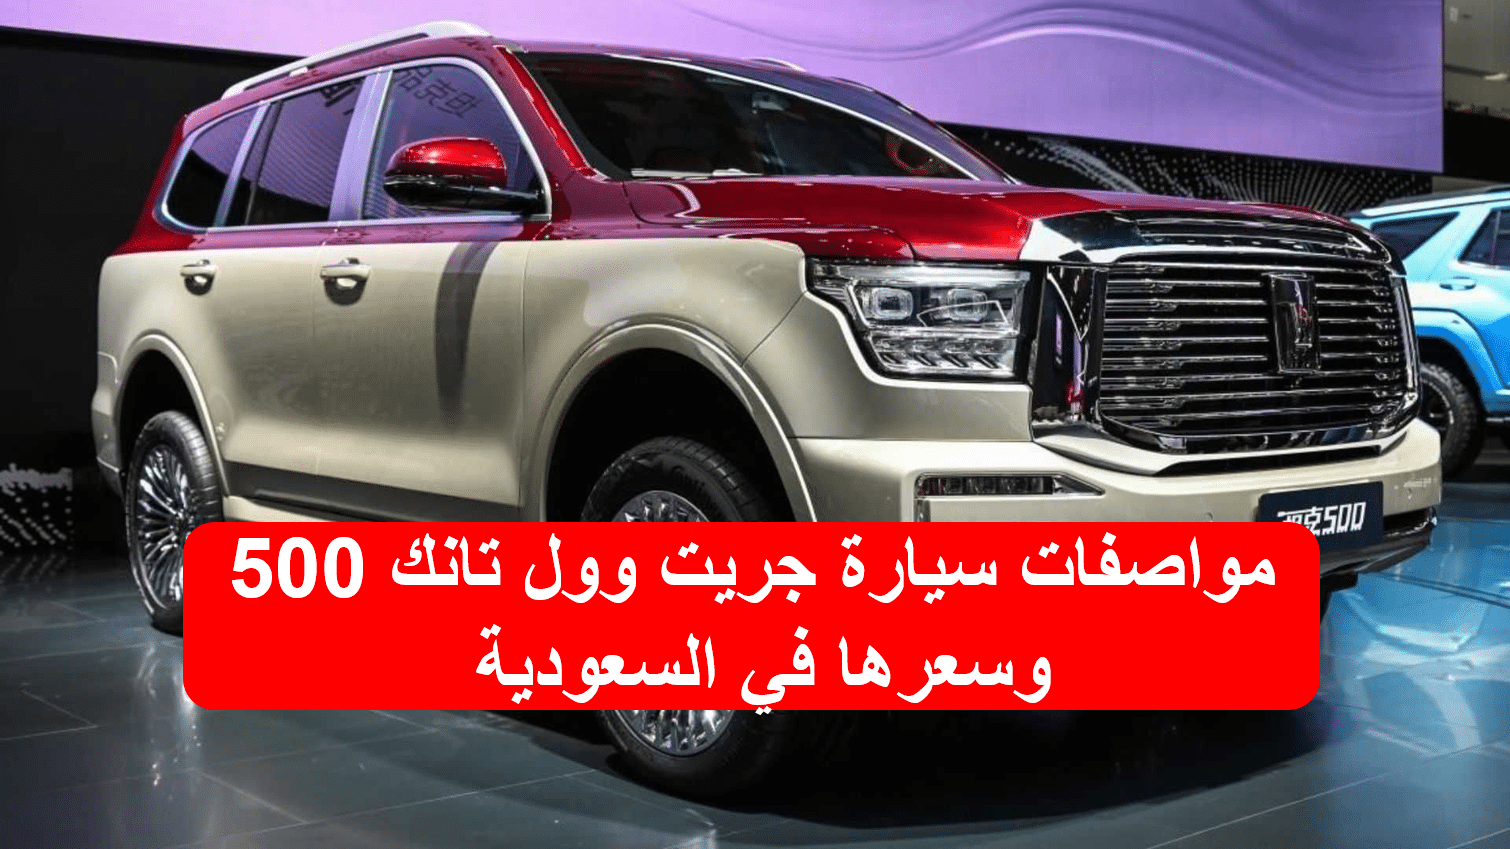 سيارة جريت وول تانك 500.. أبرز مواصفاتها وسعرها في السعودية